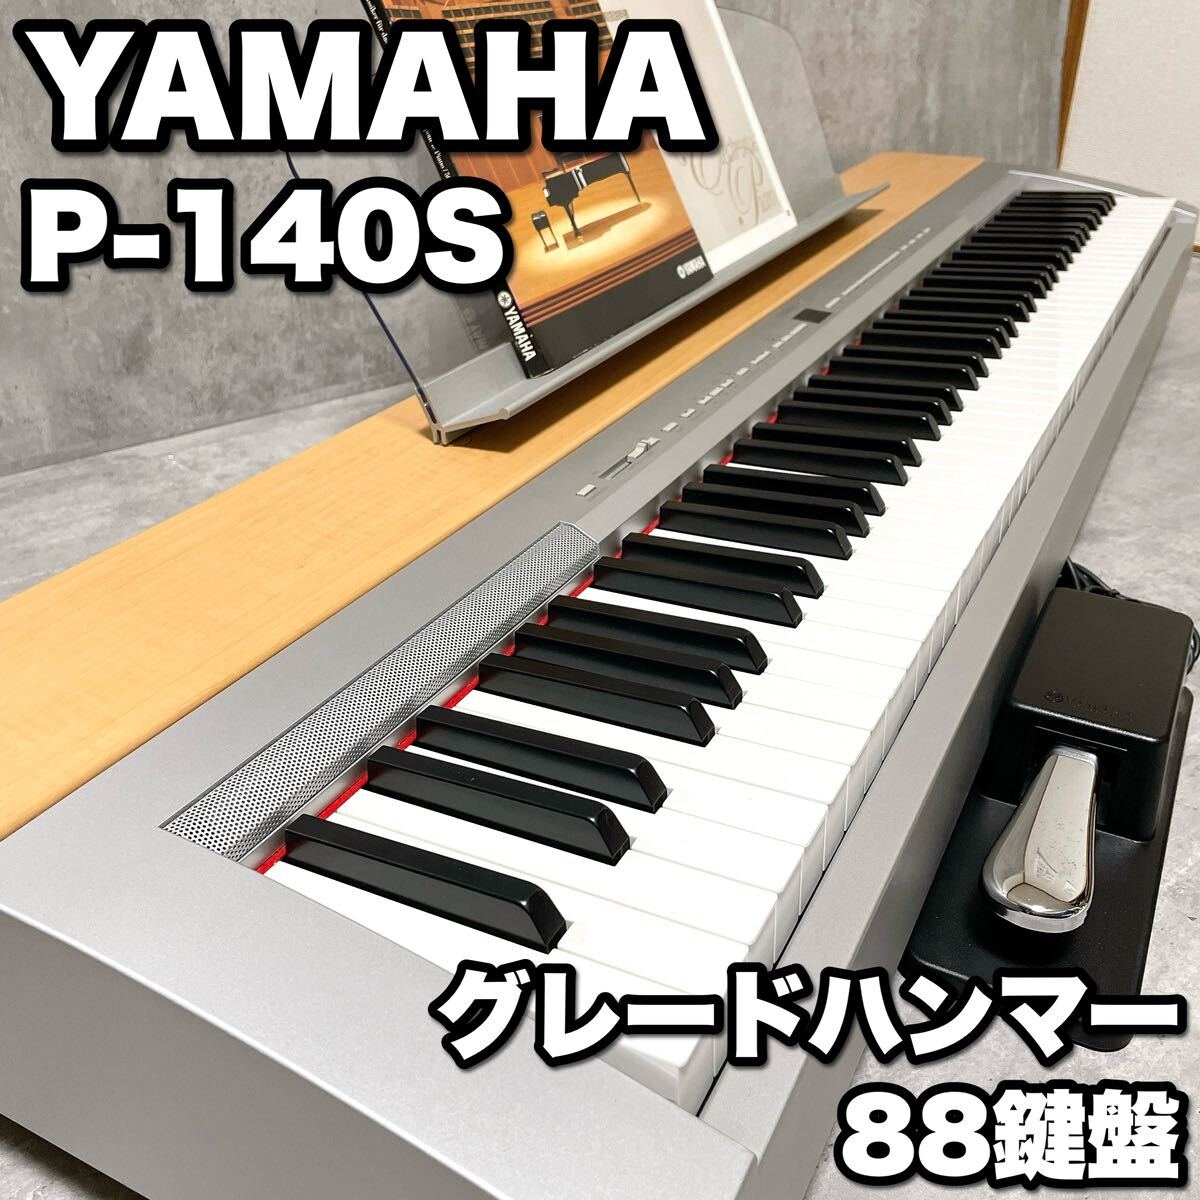 美品 YAMAHA ヤマハ P-140S 88鍵盤 電子ピアノ グレードハンマー AWMダイナミックステレオサンプリング P-140 P140 グランドピアノ仕様